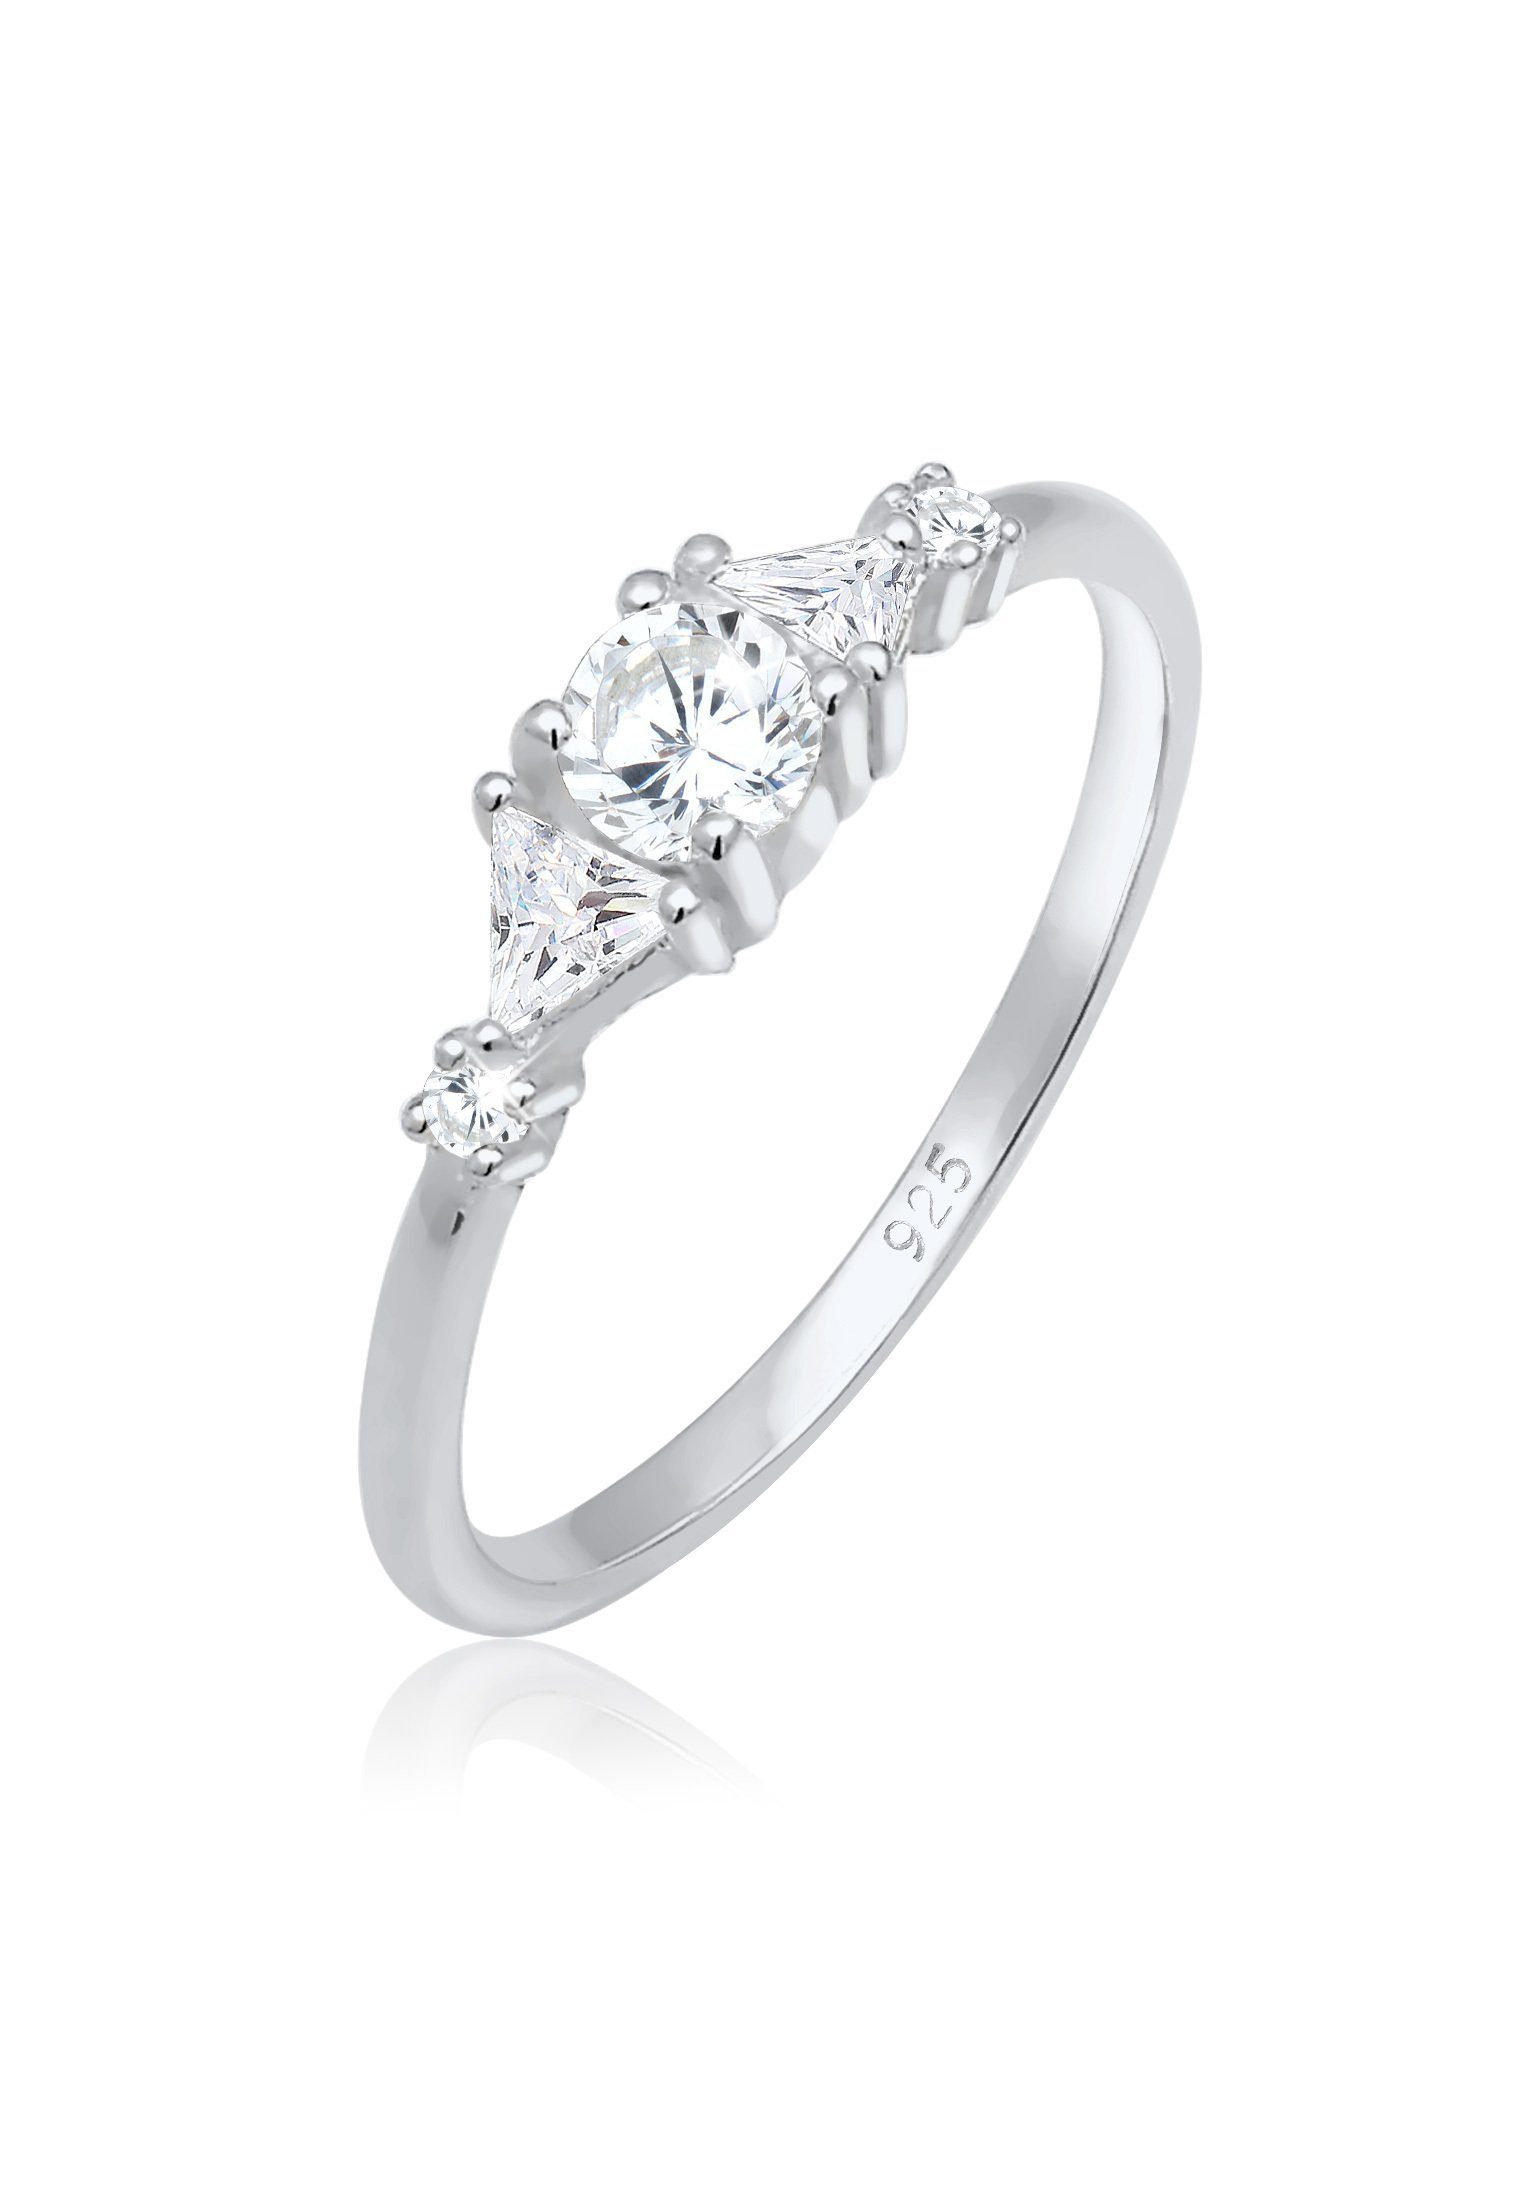 Elli Premium Verlobungsring Verlobung Zirkonia Dreieck Funkelnd 925 Silber,  Das ideale Geschenk zur Verlobung